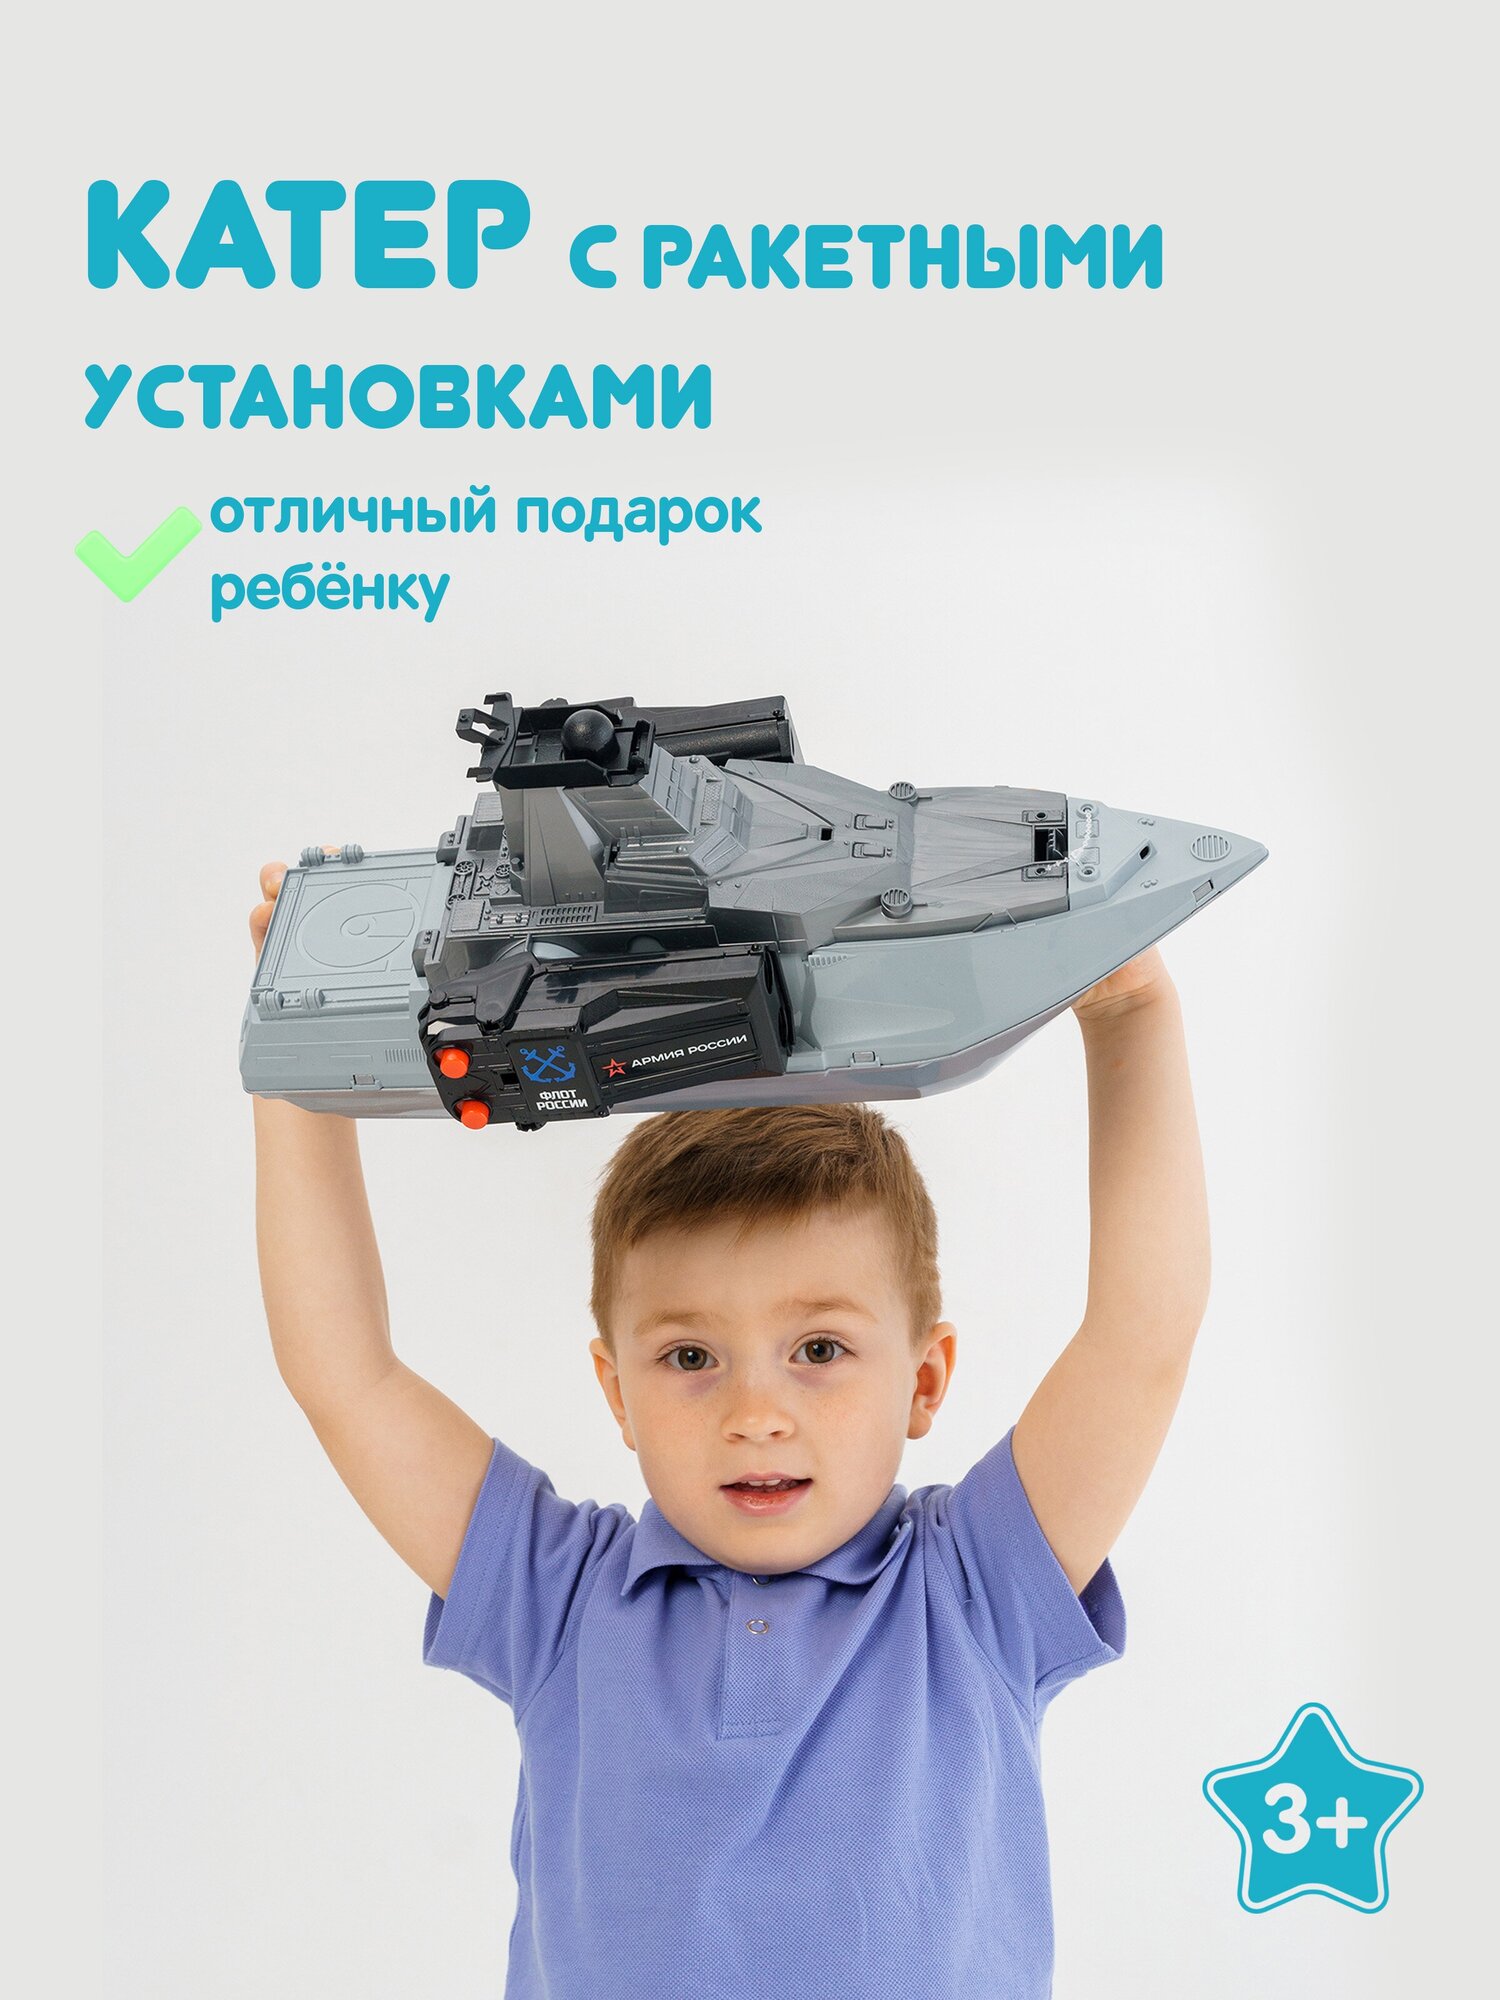 Катер с ракетными установками Нордпласт, корабль с ракетами, игрушка в индивидуальной коробке